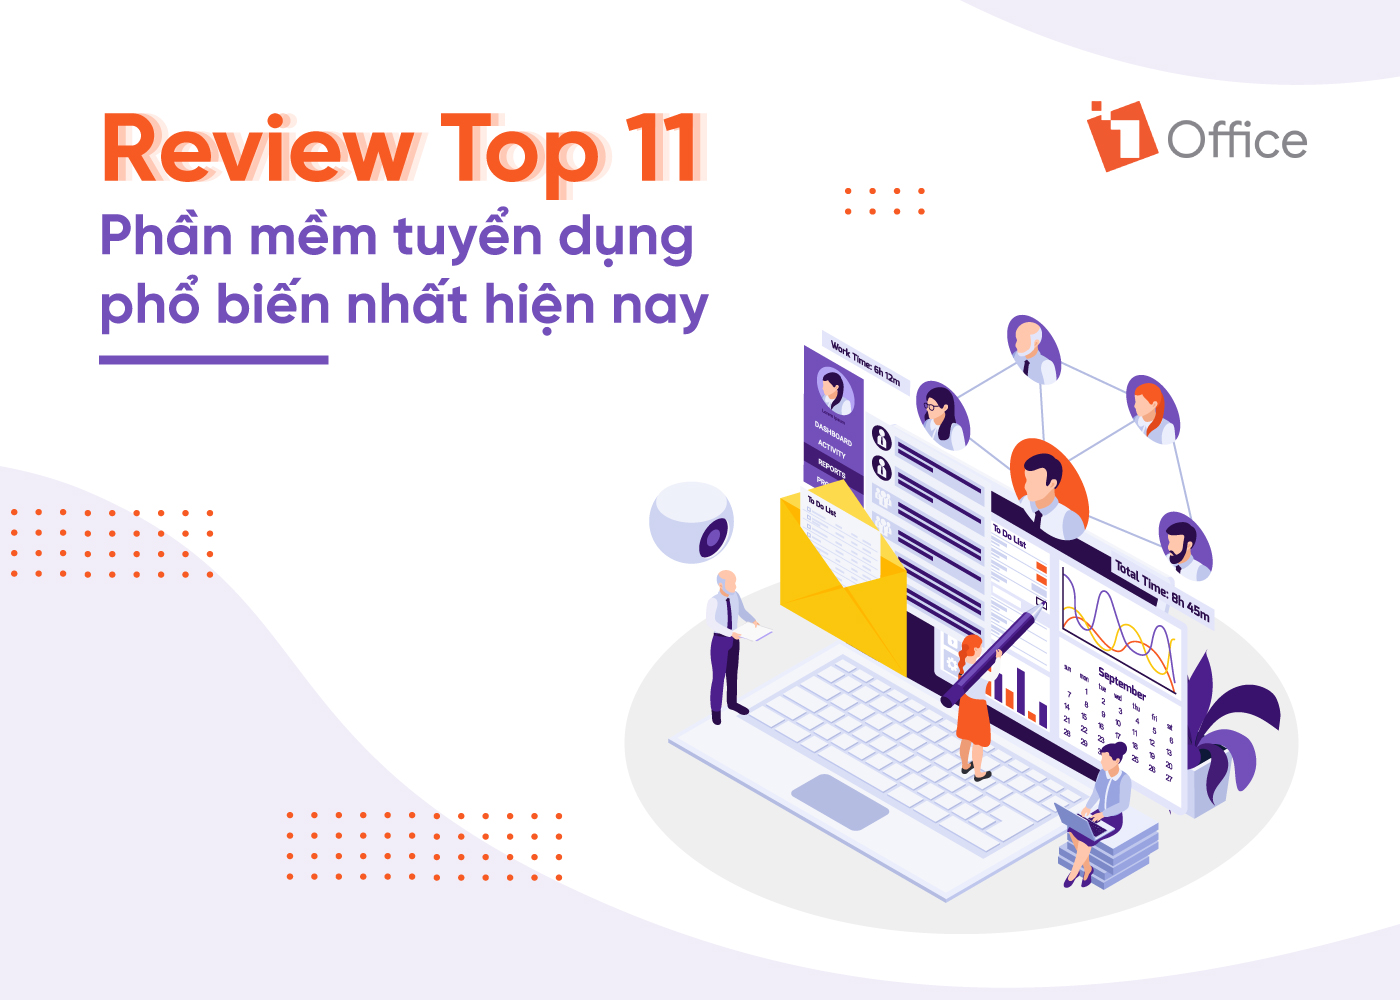 Review top 11 phần mềm tuyển dụng phổ biến nhất hiện nay